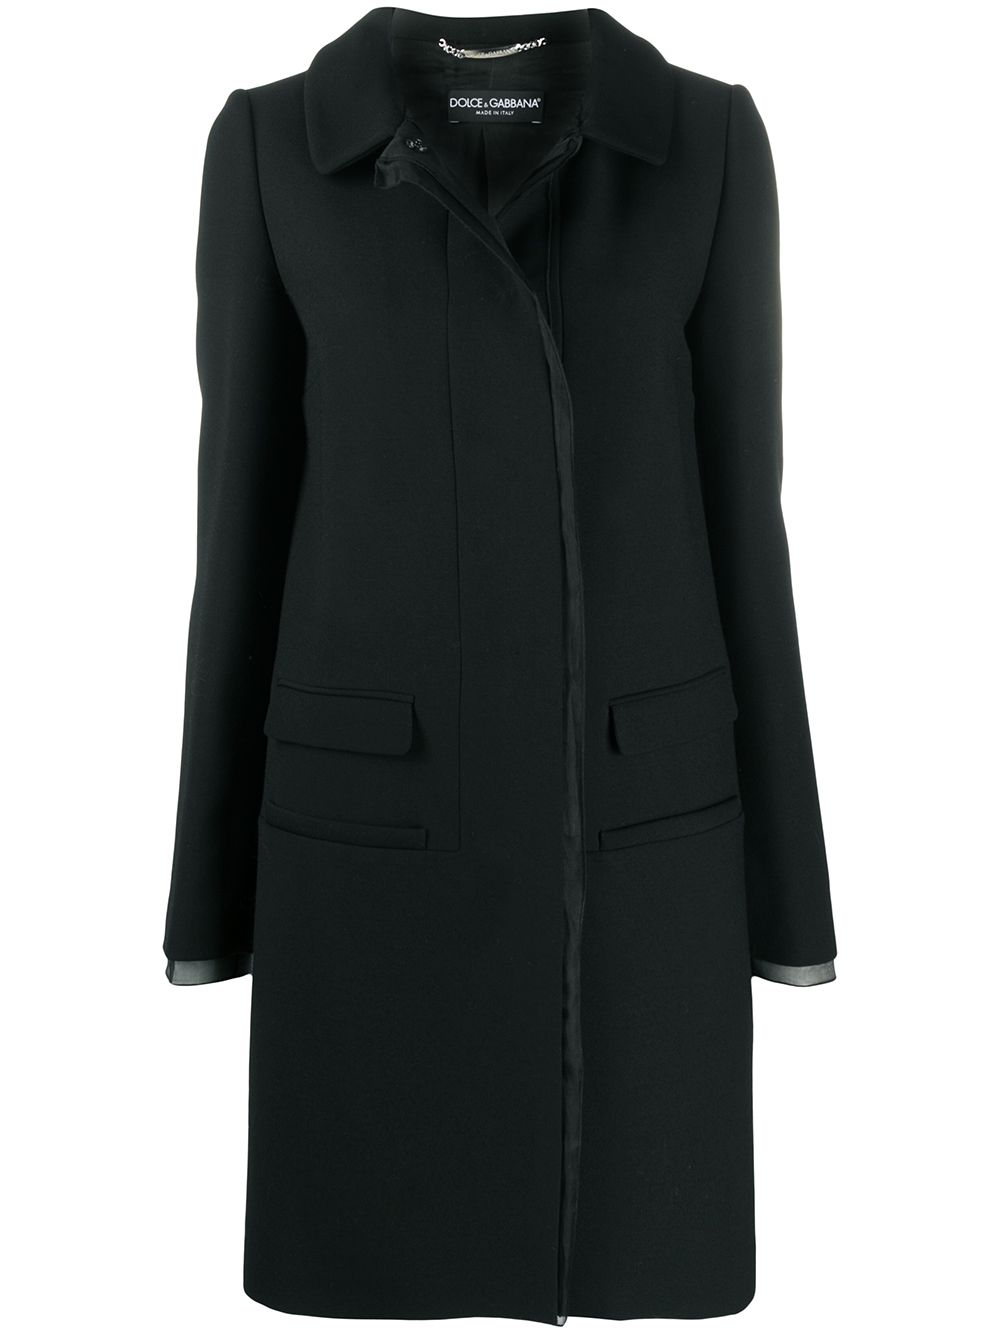 Пальто Dolce Gabbana женское. Пальто DG. Серое пальто Дольче Габбана. Реальное фото пальто DG.